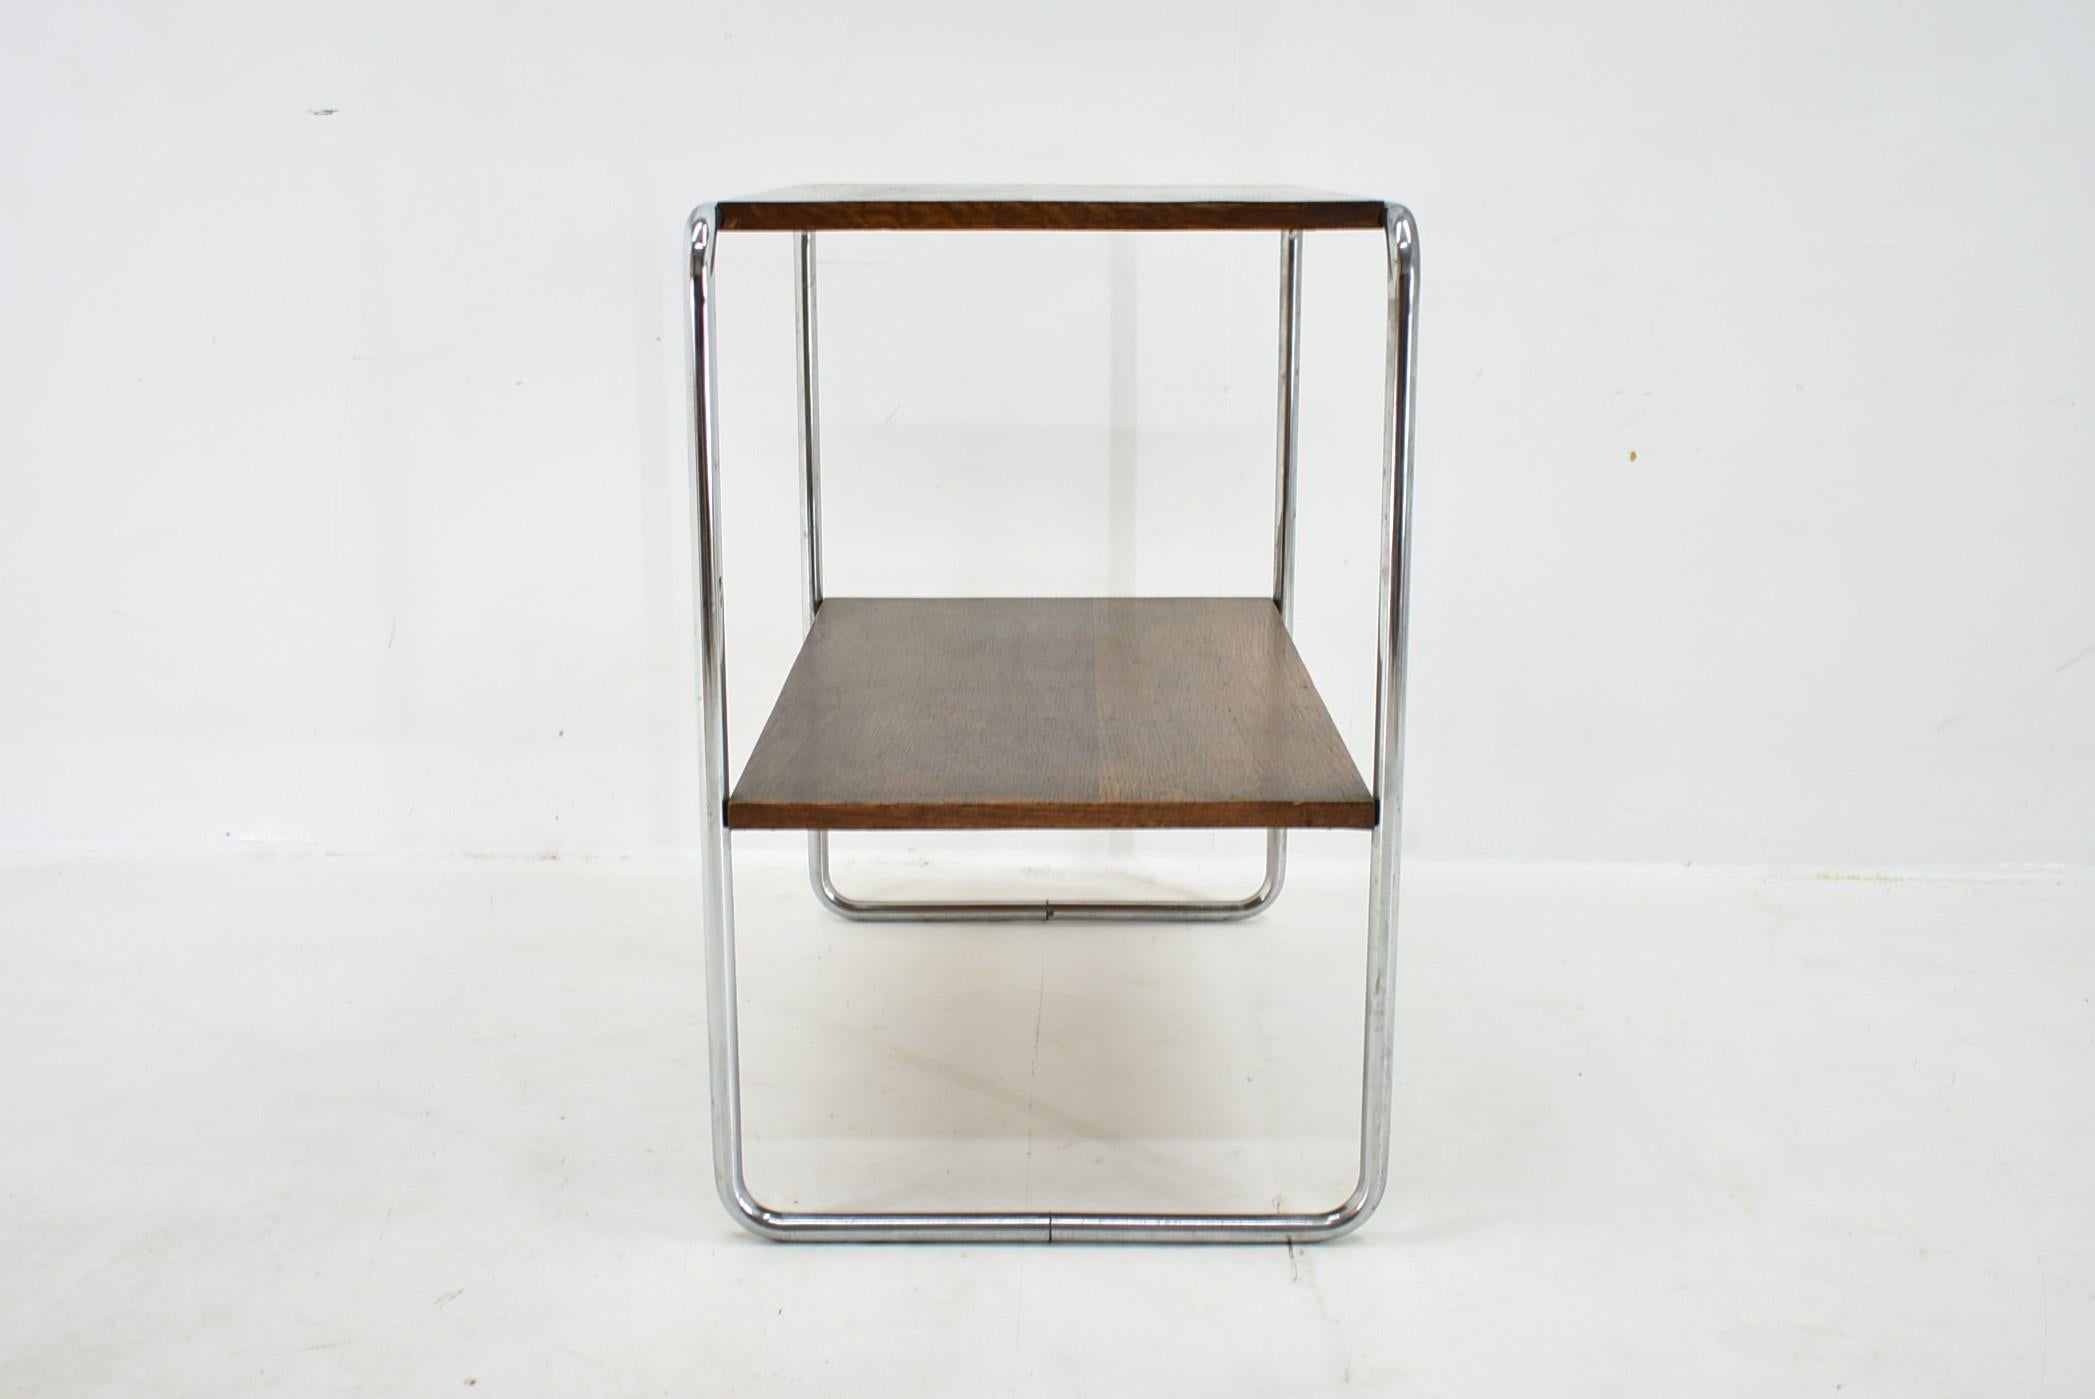 Bauhaus Chrome Table by Marcel Breuer for Mucke Melder, 1930s For Sale 5